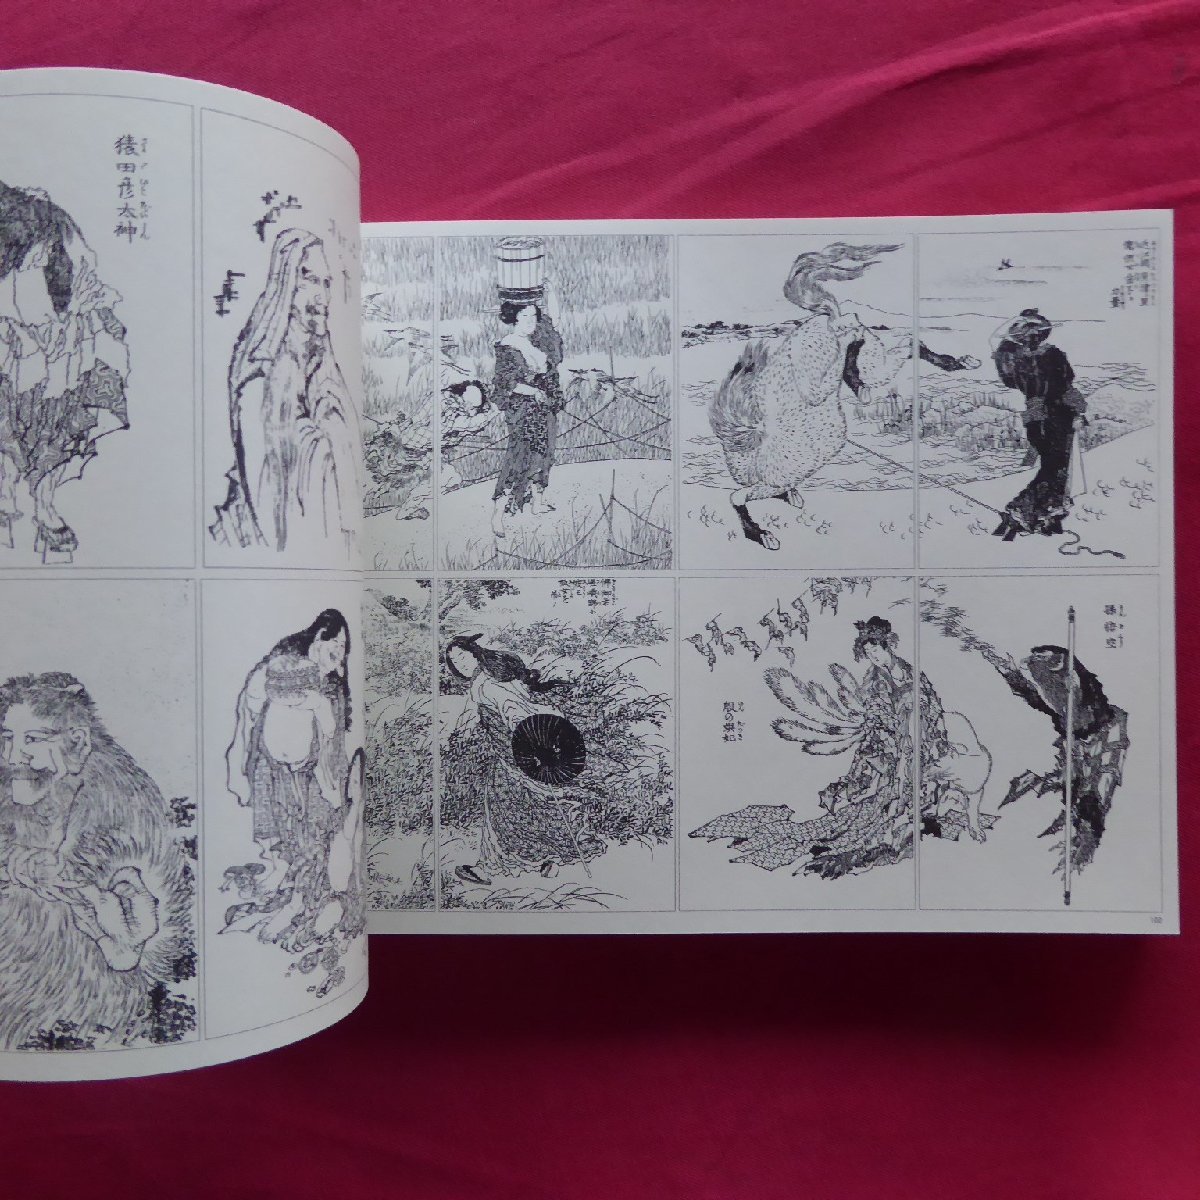 6 альбом с иллюстрациями [ север . манга - Edo .. версия дерево .../ эпоха Heisei 22 год * Hokkaido . литература павильон другой ]